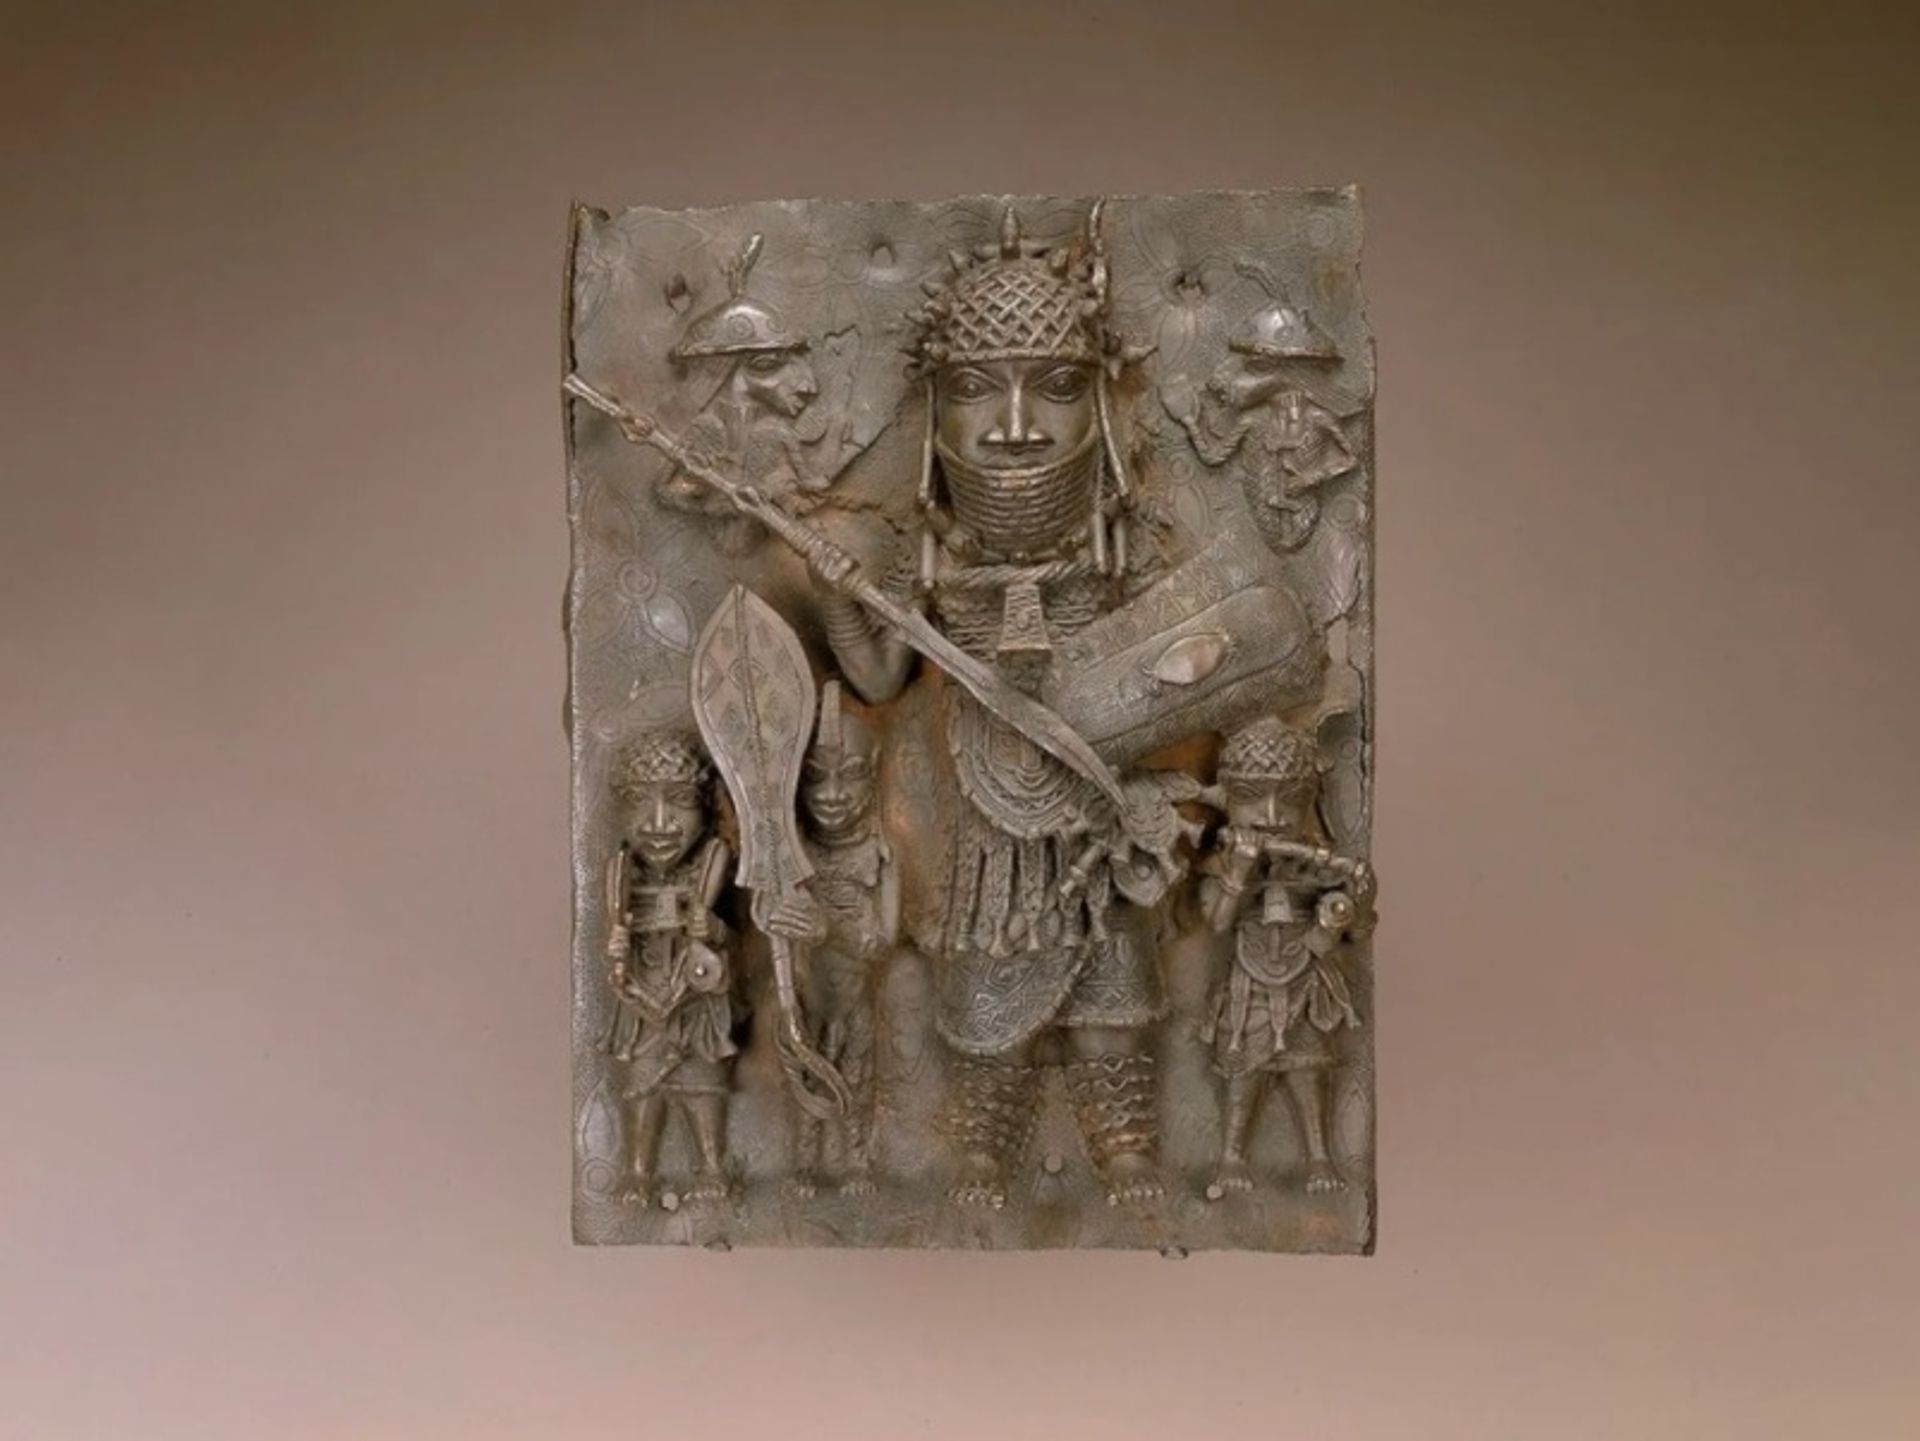 לוח סגסוגת מנחושת מהמאה ה-16 או ה-17 היה אחד מיצירות הברונזה של בנין שהוסרו מתצוגה בשנה שעברה

© המוזיאון הלאומי לאמנות אפריקאית